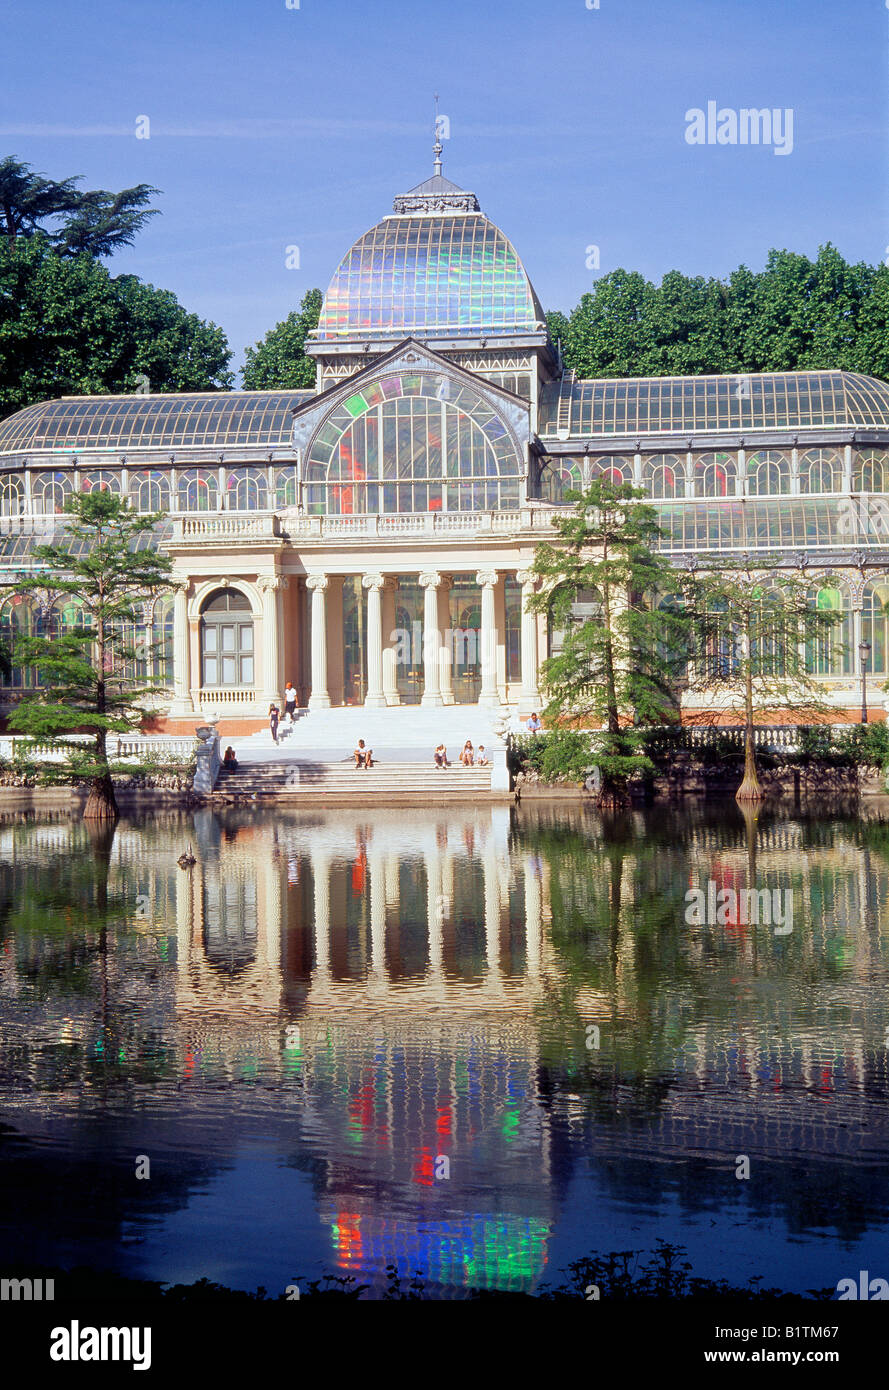 Palacio de Cristal et son reflet sur l'étang. Le parc du Retiro. Madrid. L'Espagne. Banque D'Images